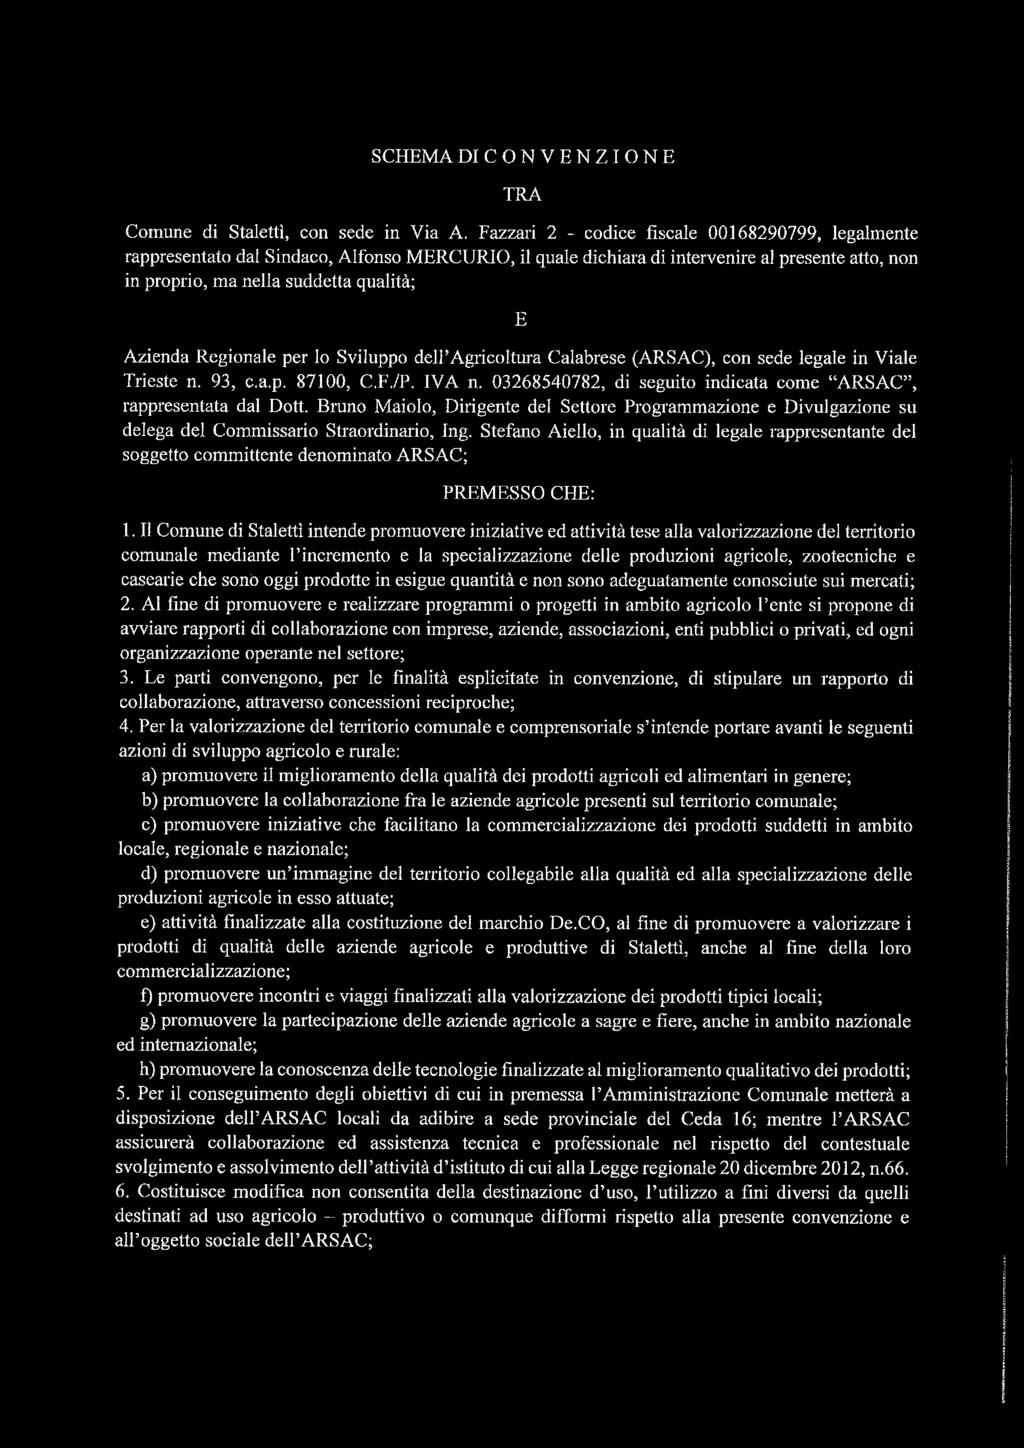 Regionale per lo Sviluppo dell Agricoltura Calabrese (ARSAC), con sede legale in Viale Trieste n. 93, c.a.p. 87100, C.F./P. IVA n. 03268540782, di seguito indicata come ARSAC, rappresentata dal Dott.